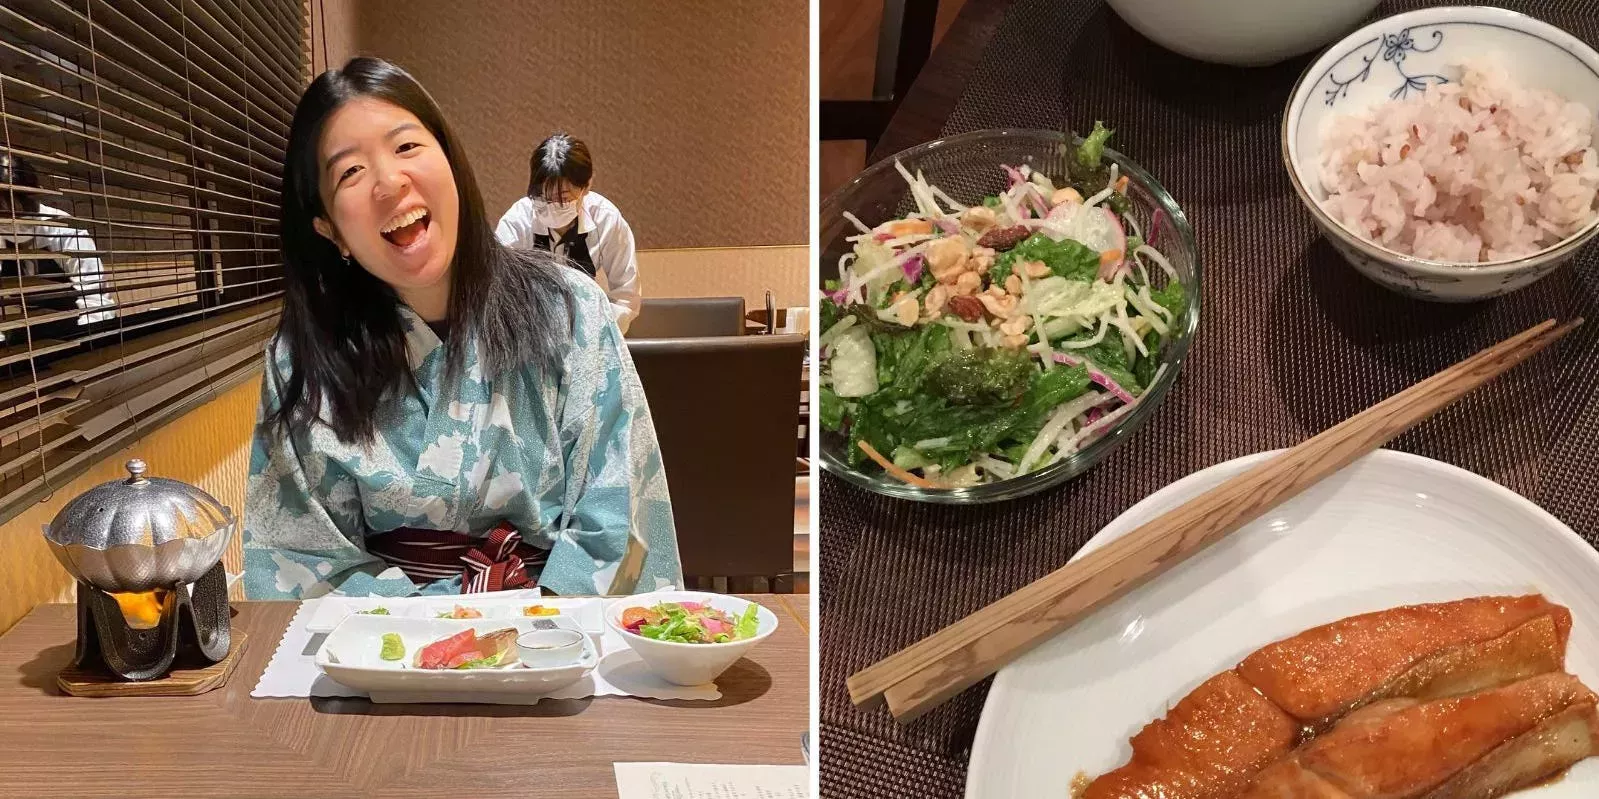 Me mudé a Japón y empecé a seguir dos principios básicos de la alimentación sana japonesa, que me ayudaron a pasar de la obsesión por la comida a la libertad.